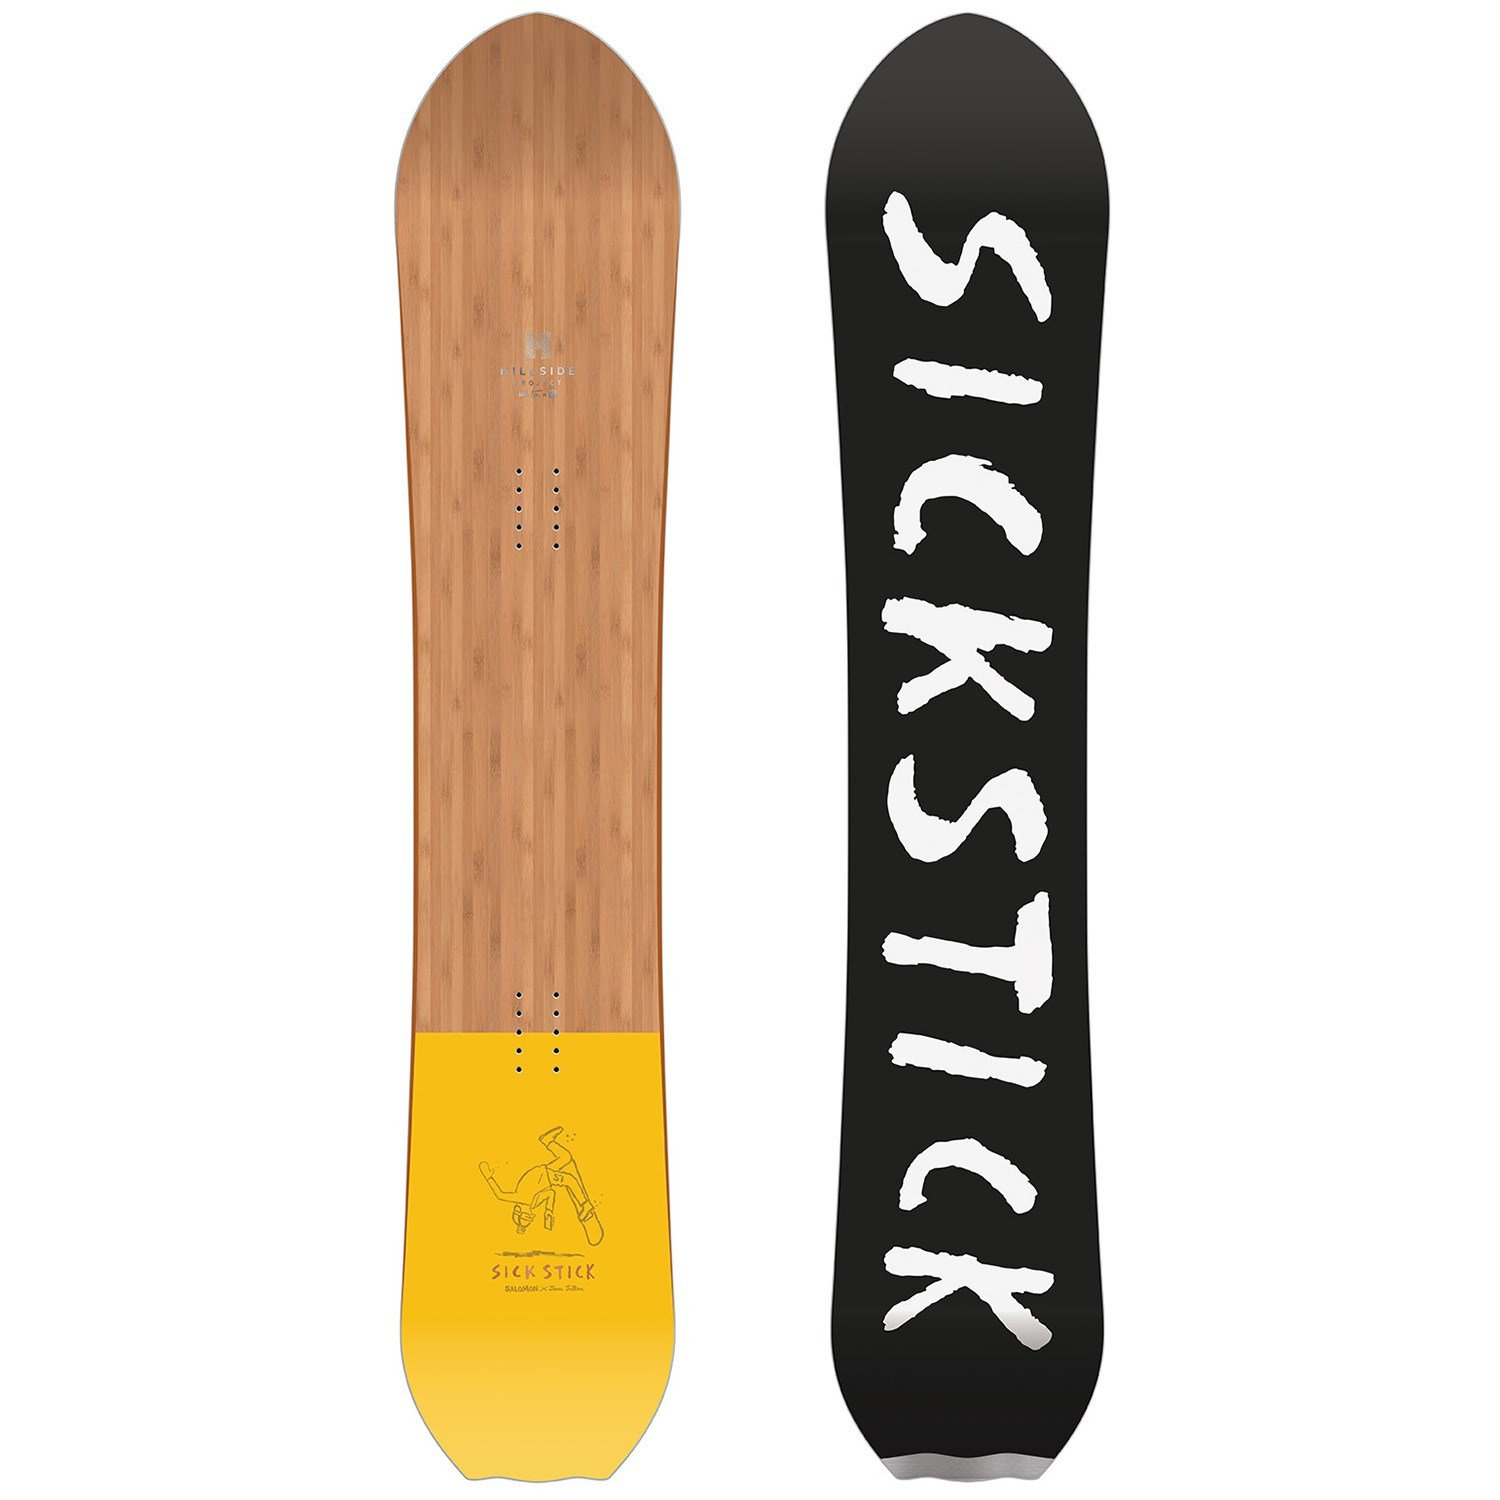 Salomon Sickstick Snowboard 2019 | evo